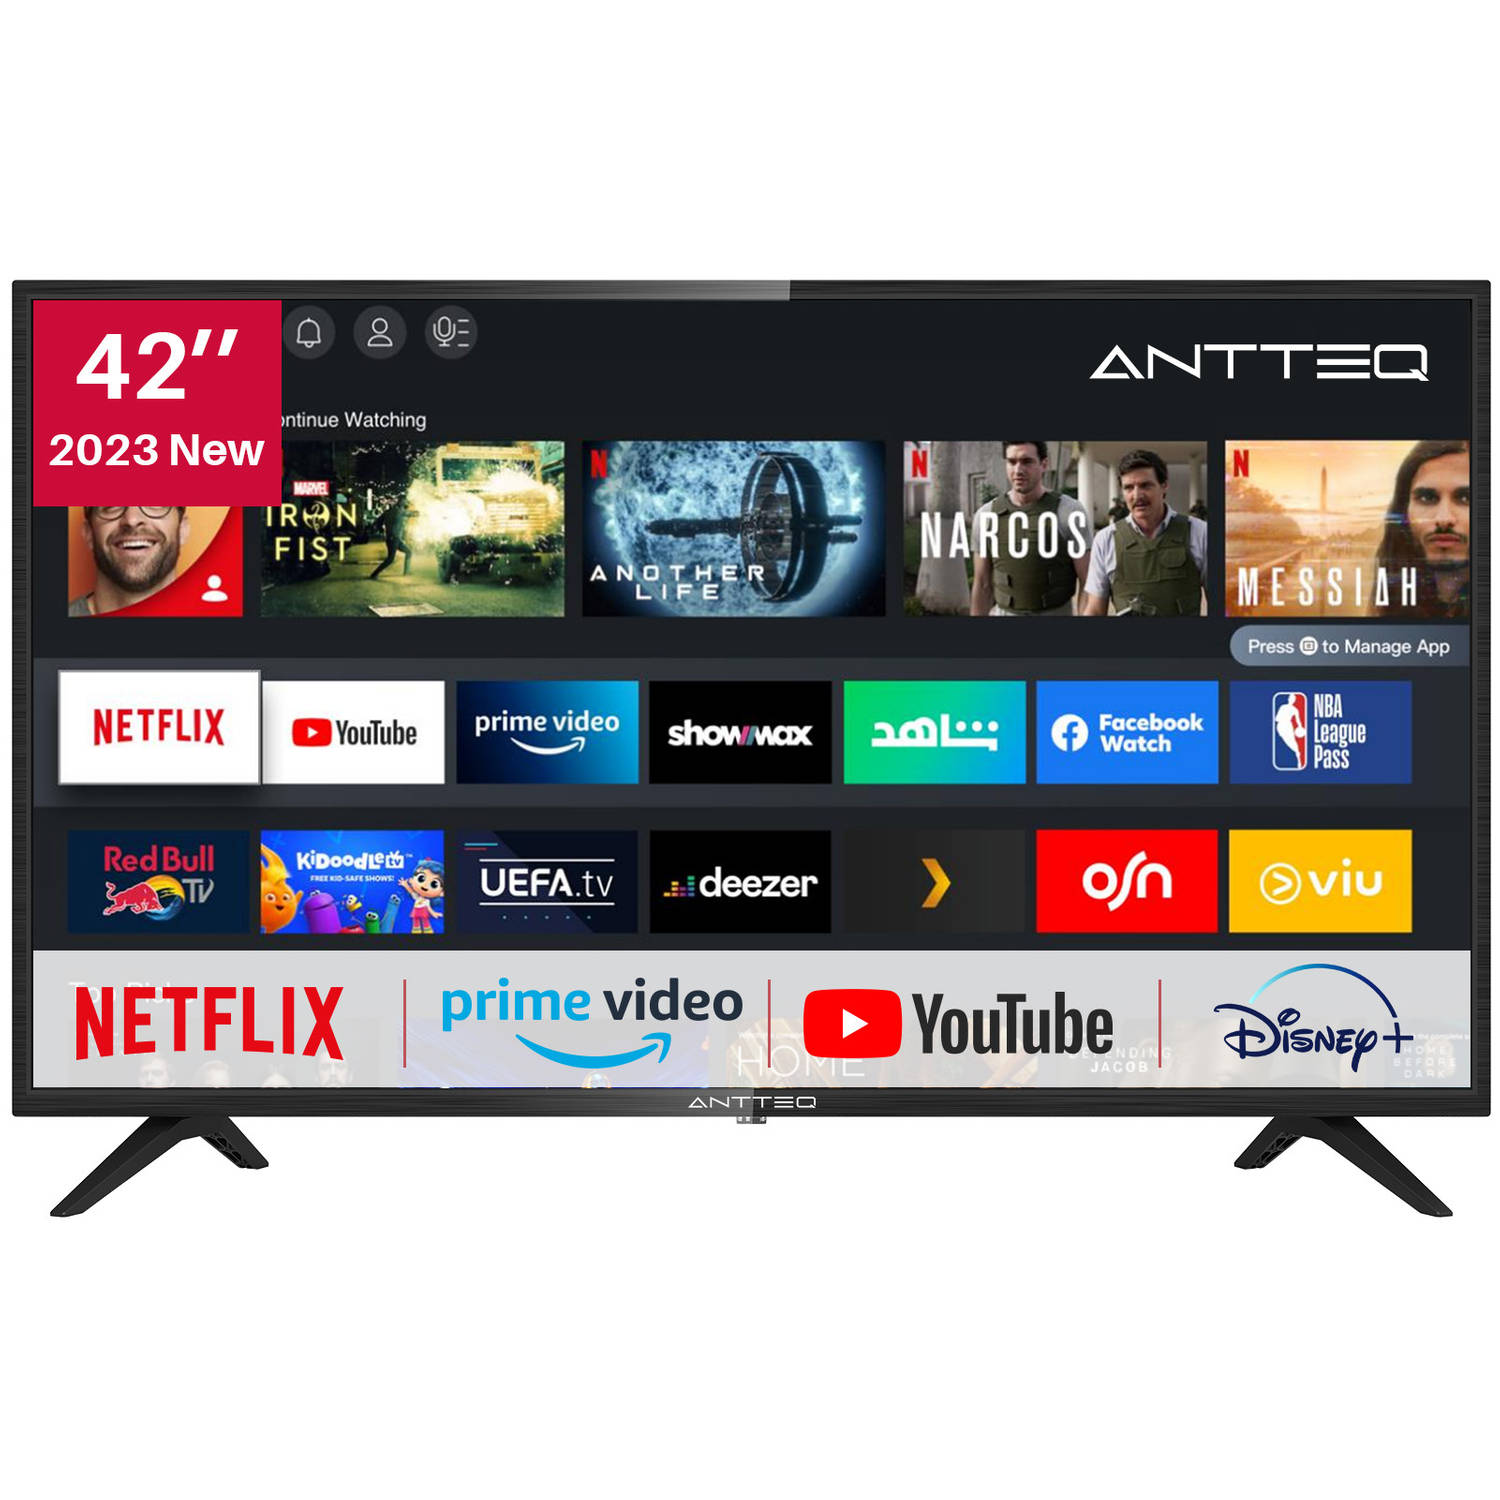 ANTTEQ AV42F3-42inch- Full HD Smart TV